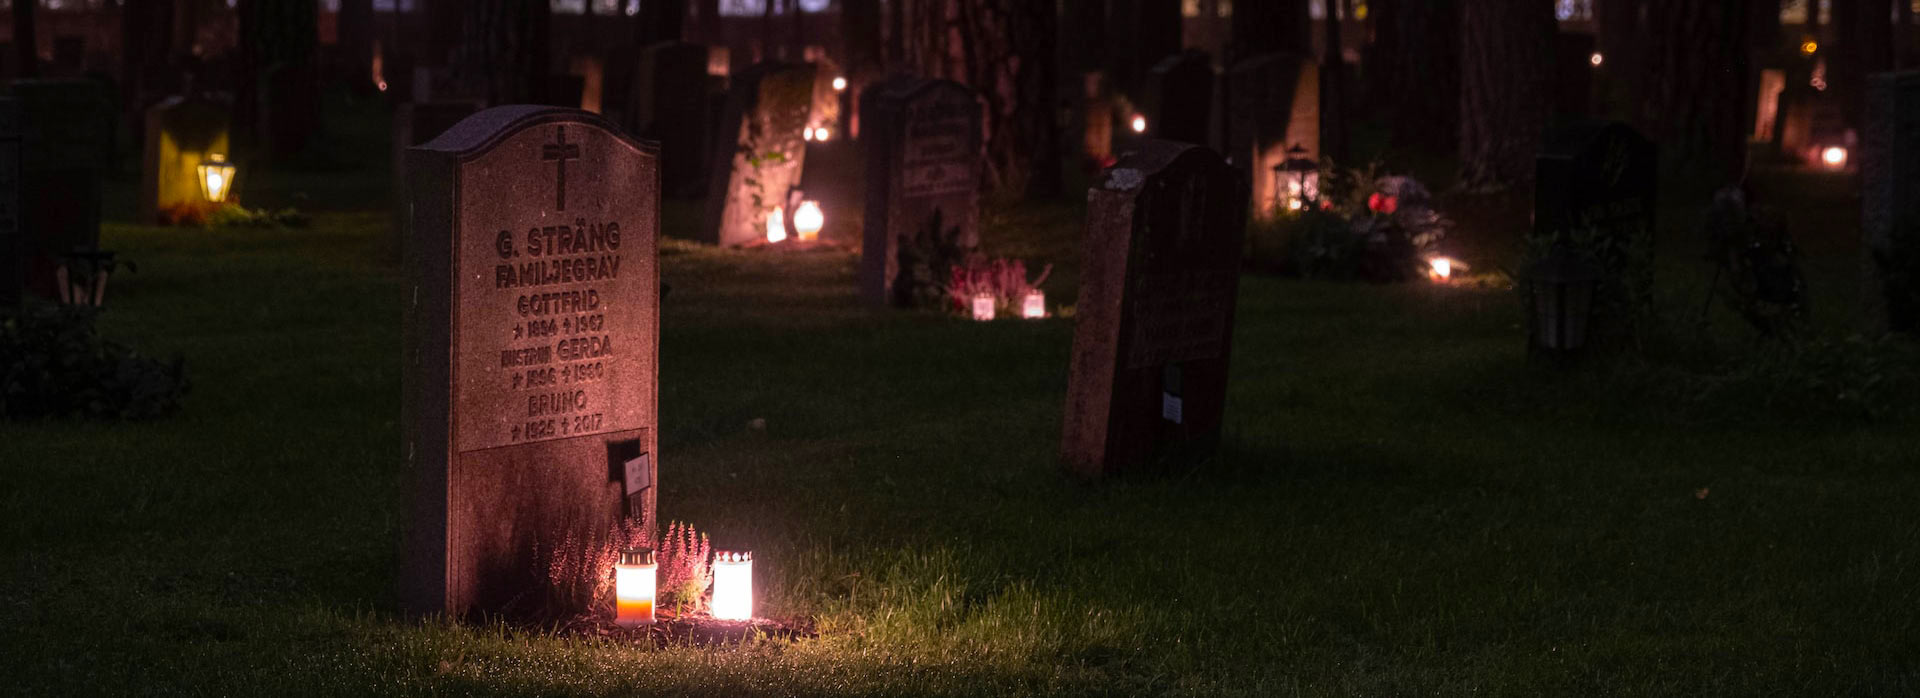 Ein mit Kerzen beleuchteter Friedhof bei Nacht